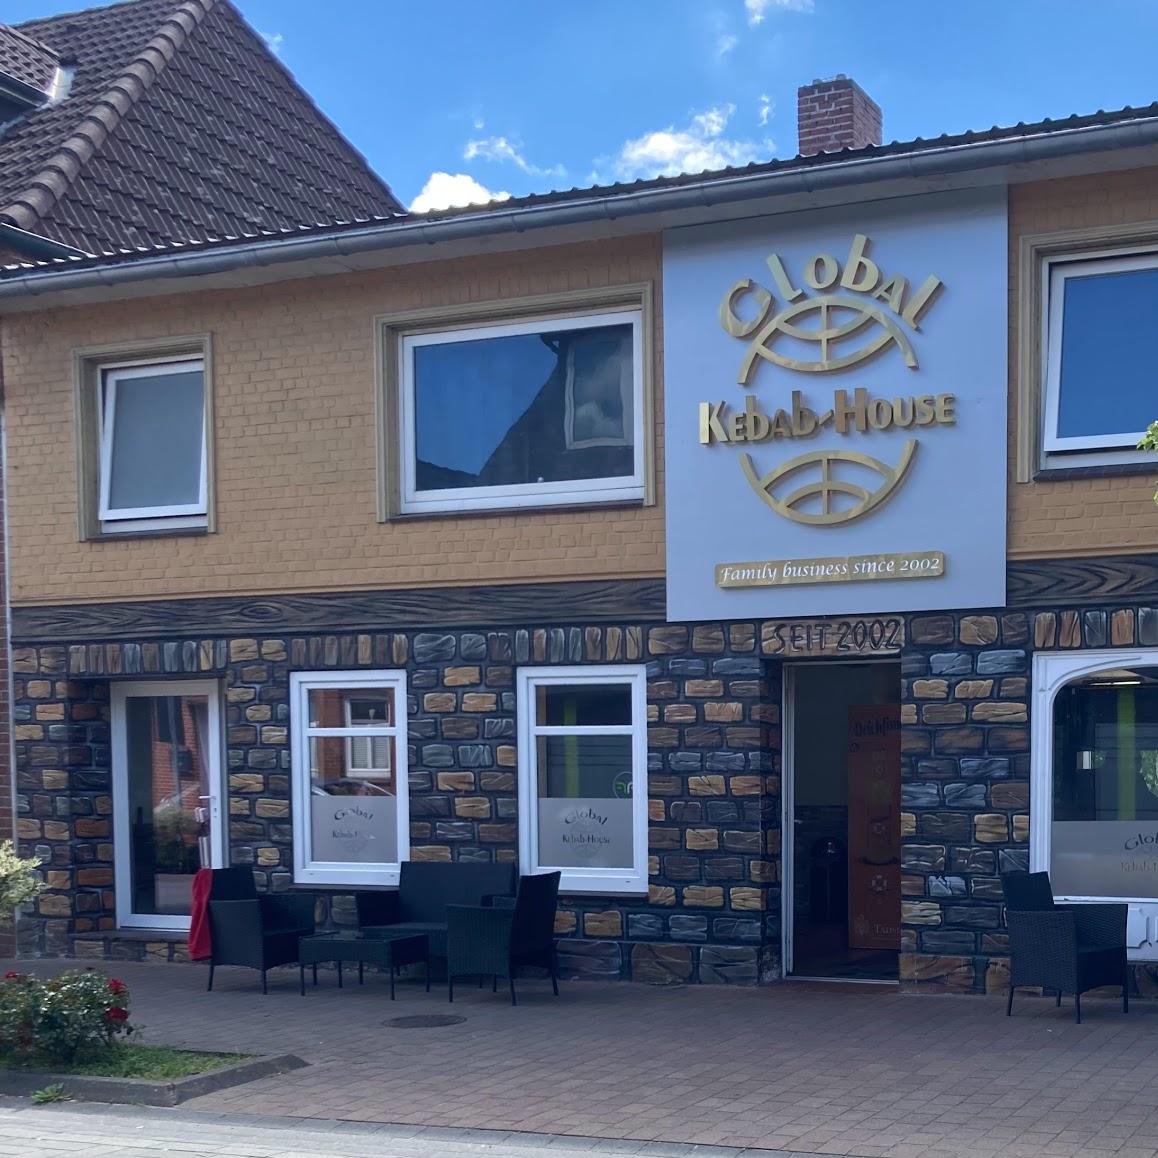 Restaurant "Global Kebab House Inh. Enver Kaska" in Bredstedt